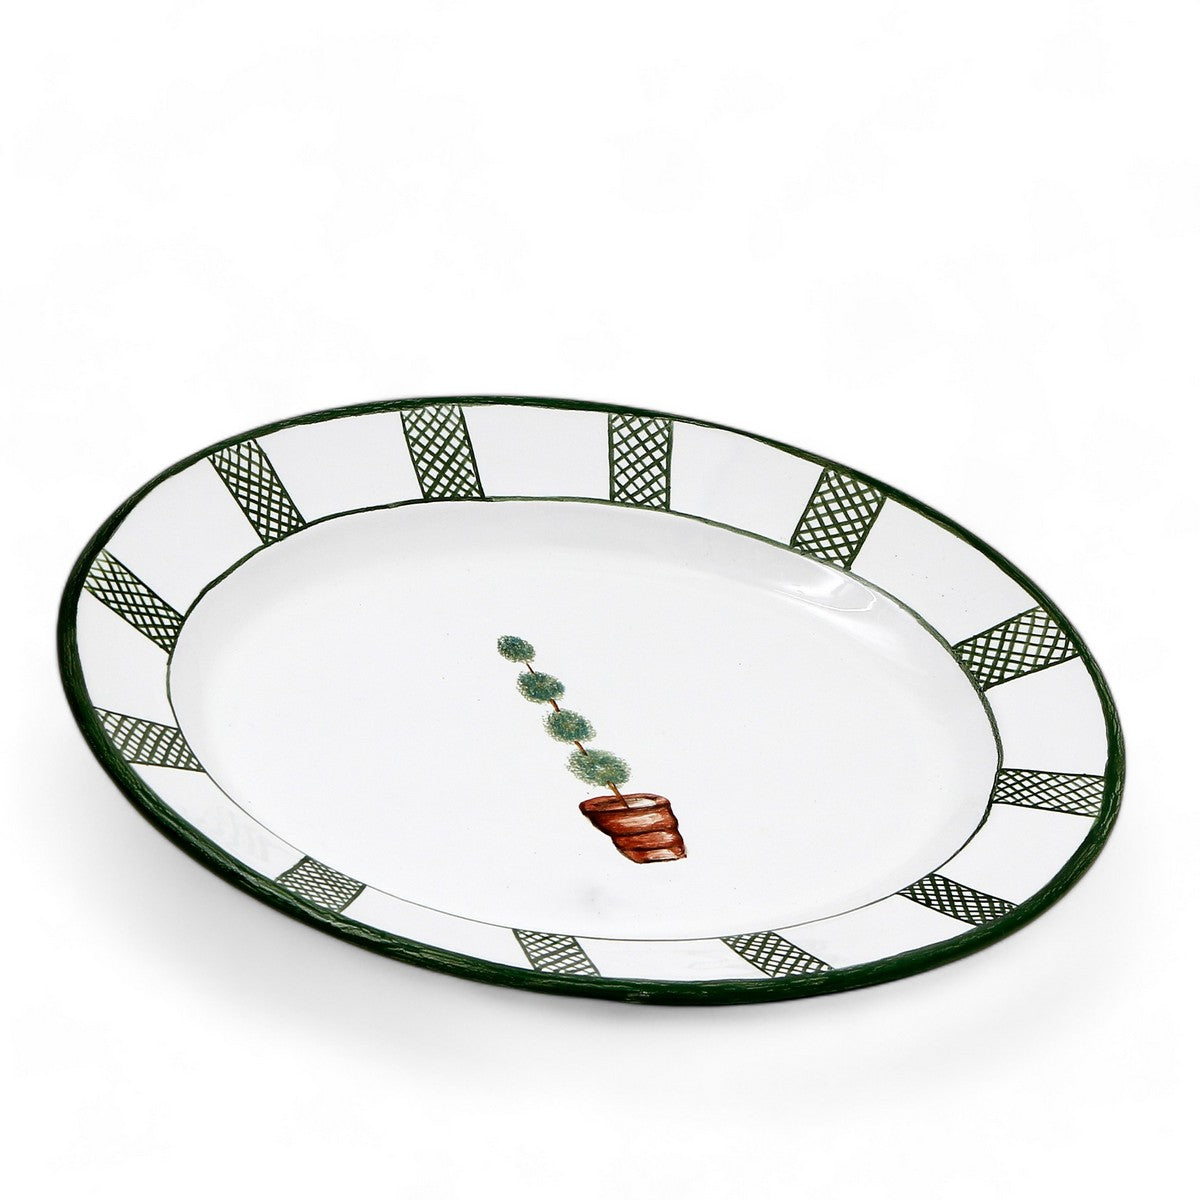 GIARDINO: Serving Oval Platter